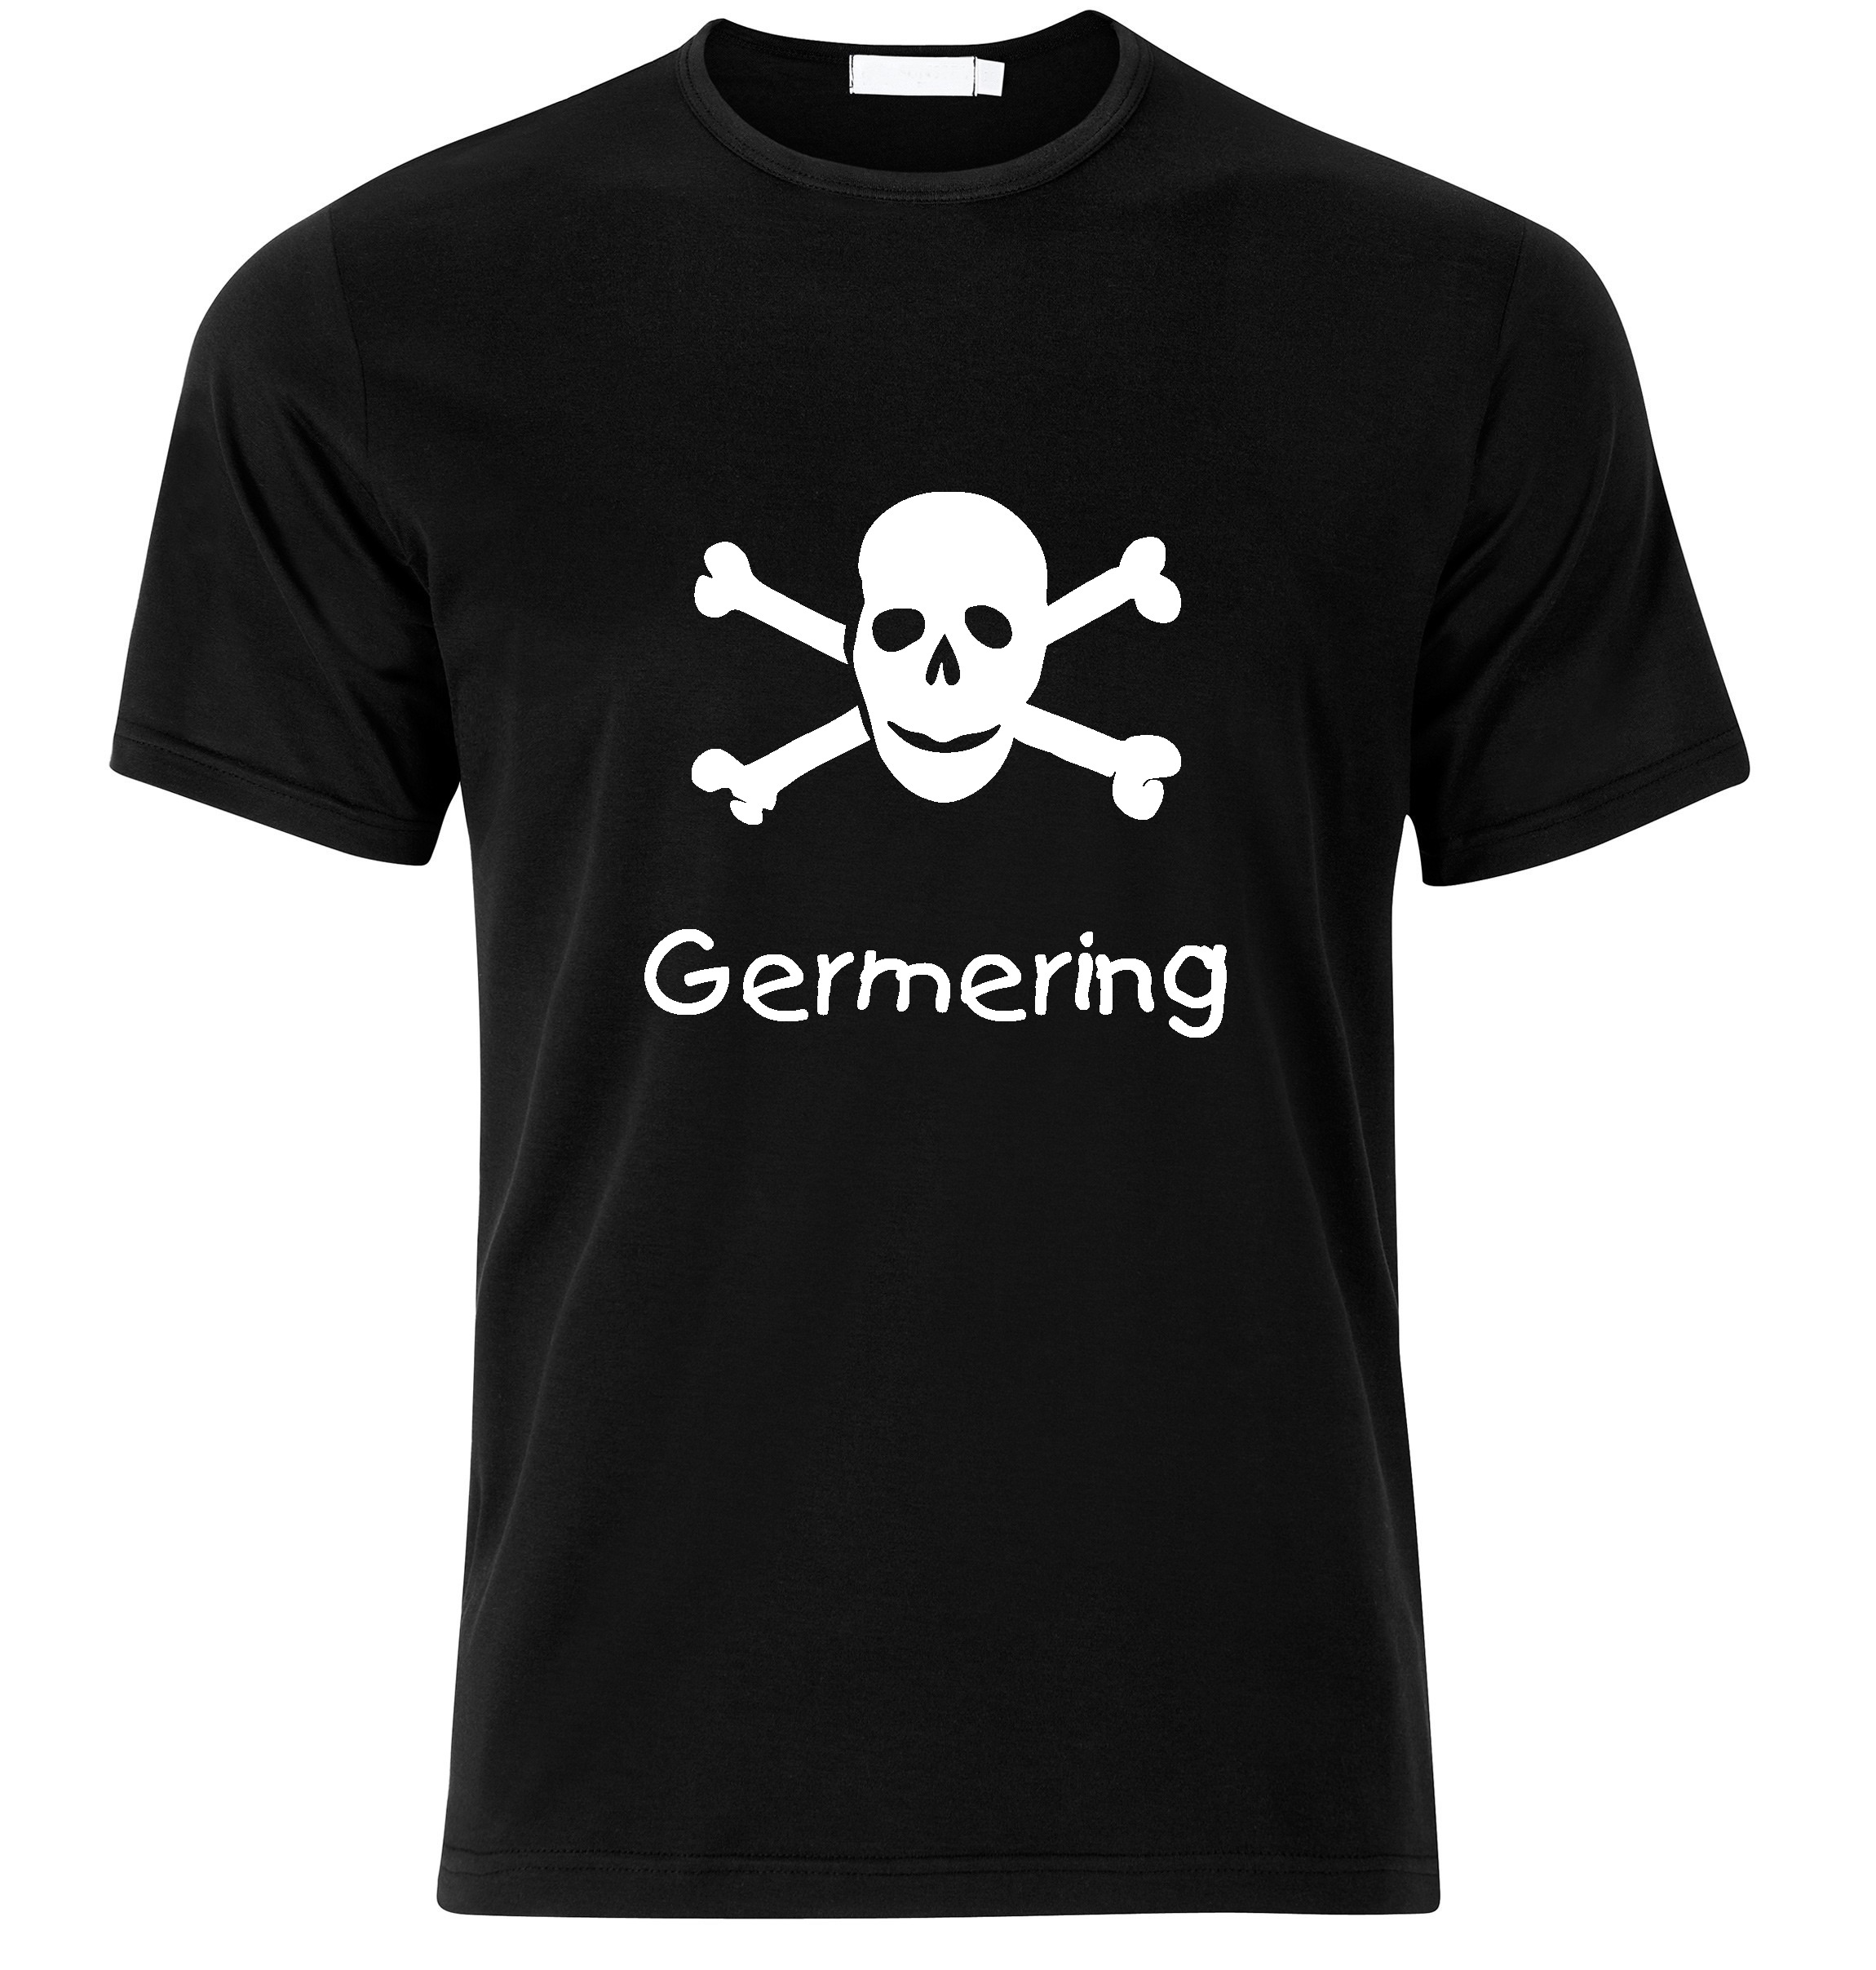 T-Shirt Germering Jolly Roger, Totenkopf